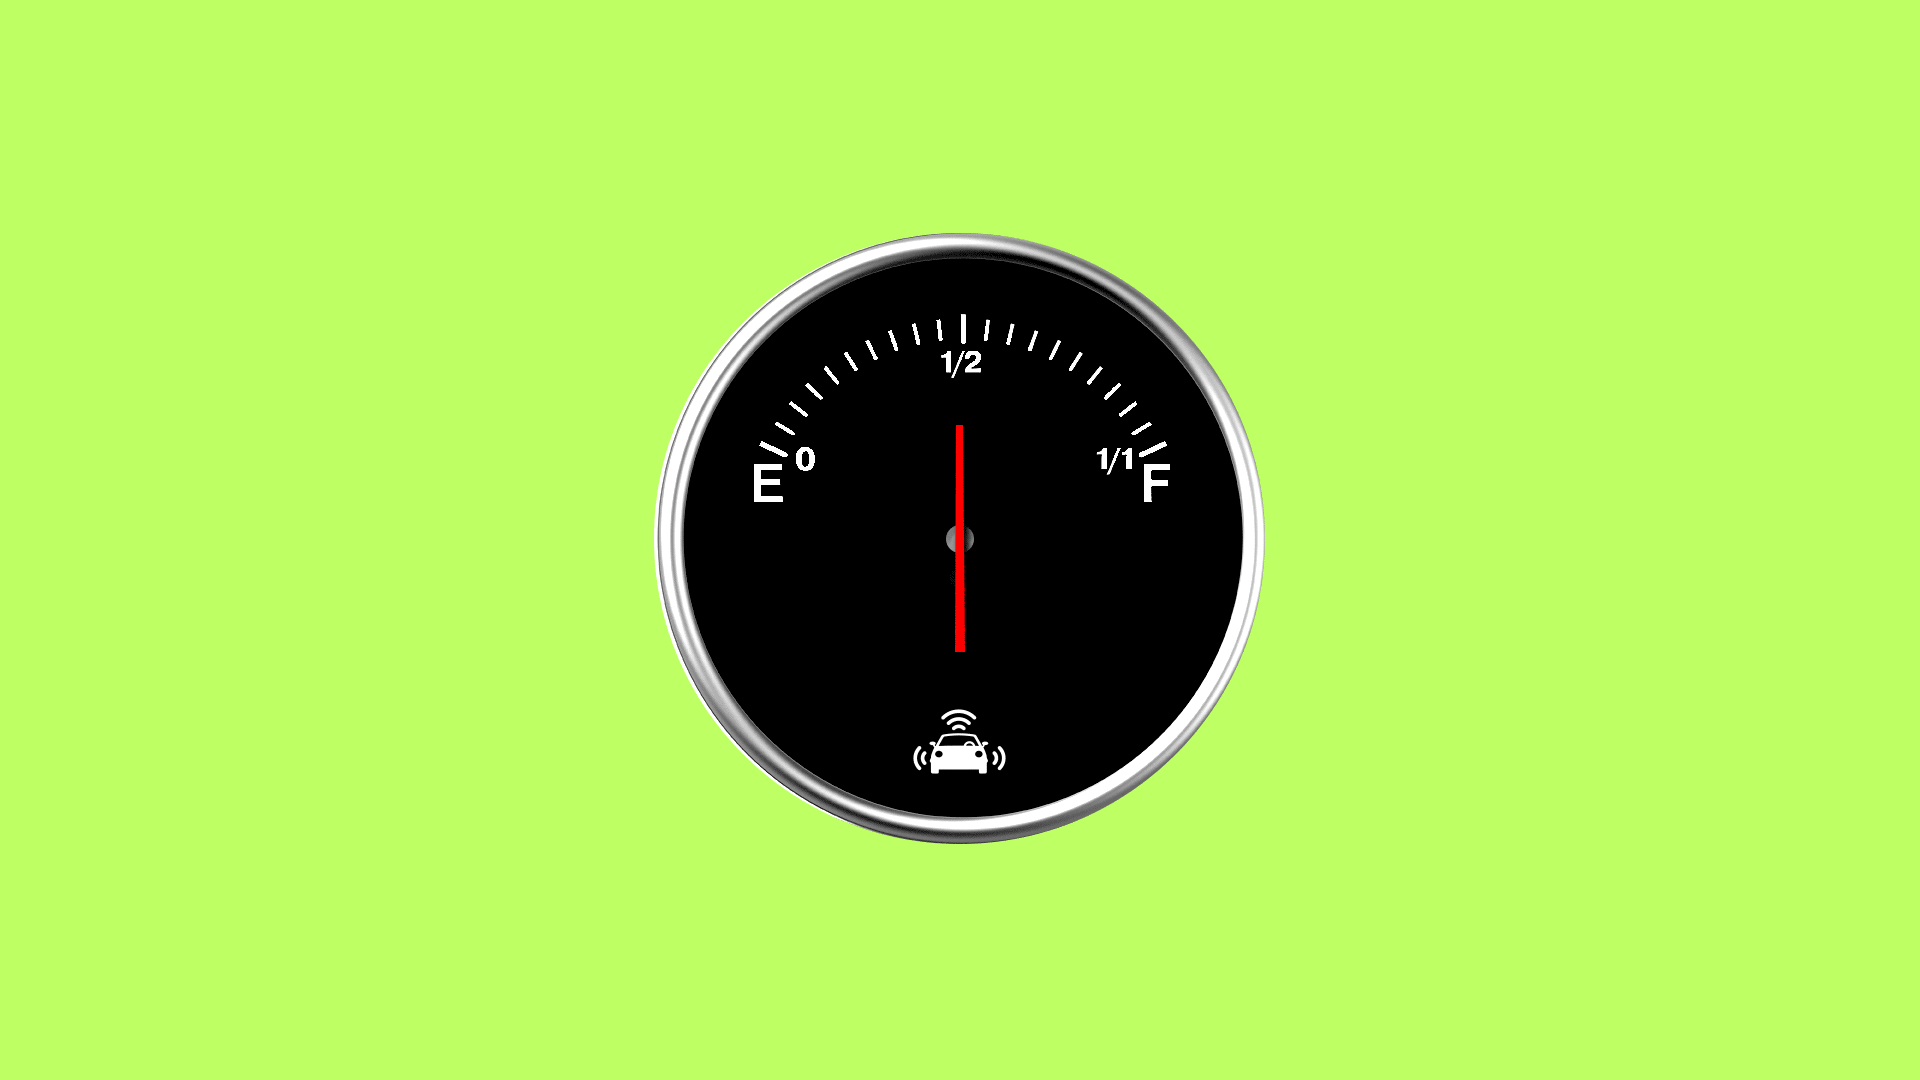 Illustration of half full gas gauge with AV symbol 